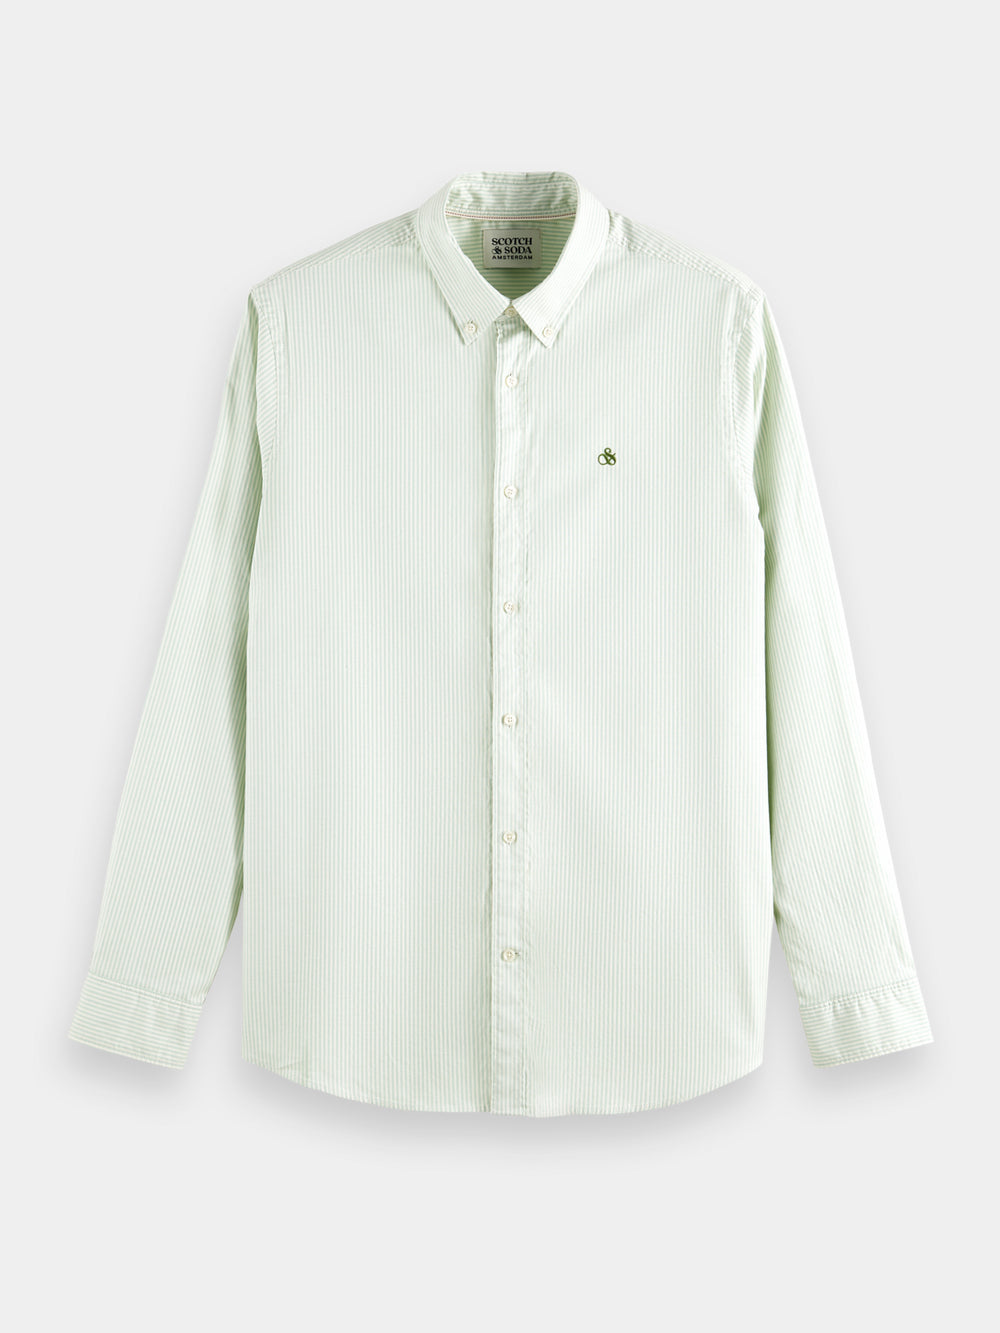 Cotton Oxford shirt - Scotch & Soda AU